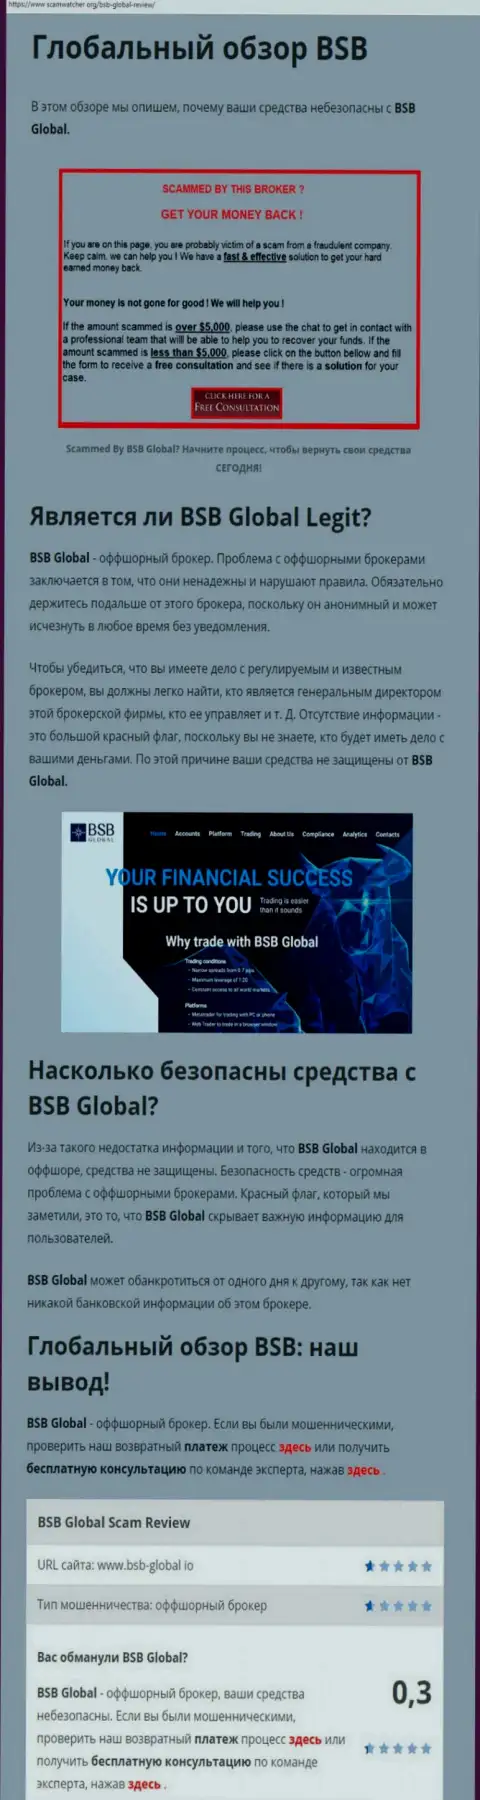 BSB Global - это ОБМАНЩИКИ !!! Взаимодействие с которыми может обернуться утратой вложенных денег (обзор манипуляций)